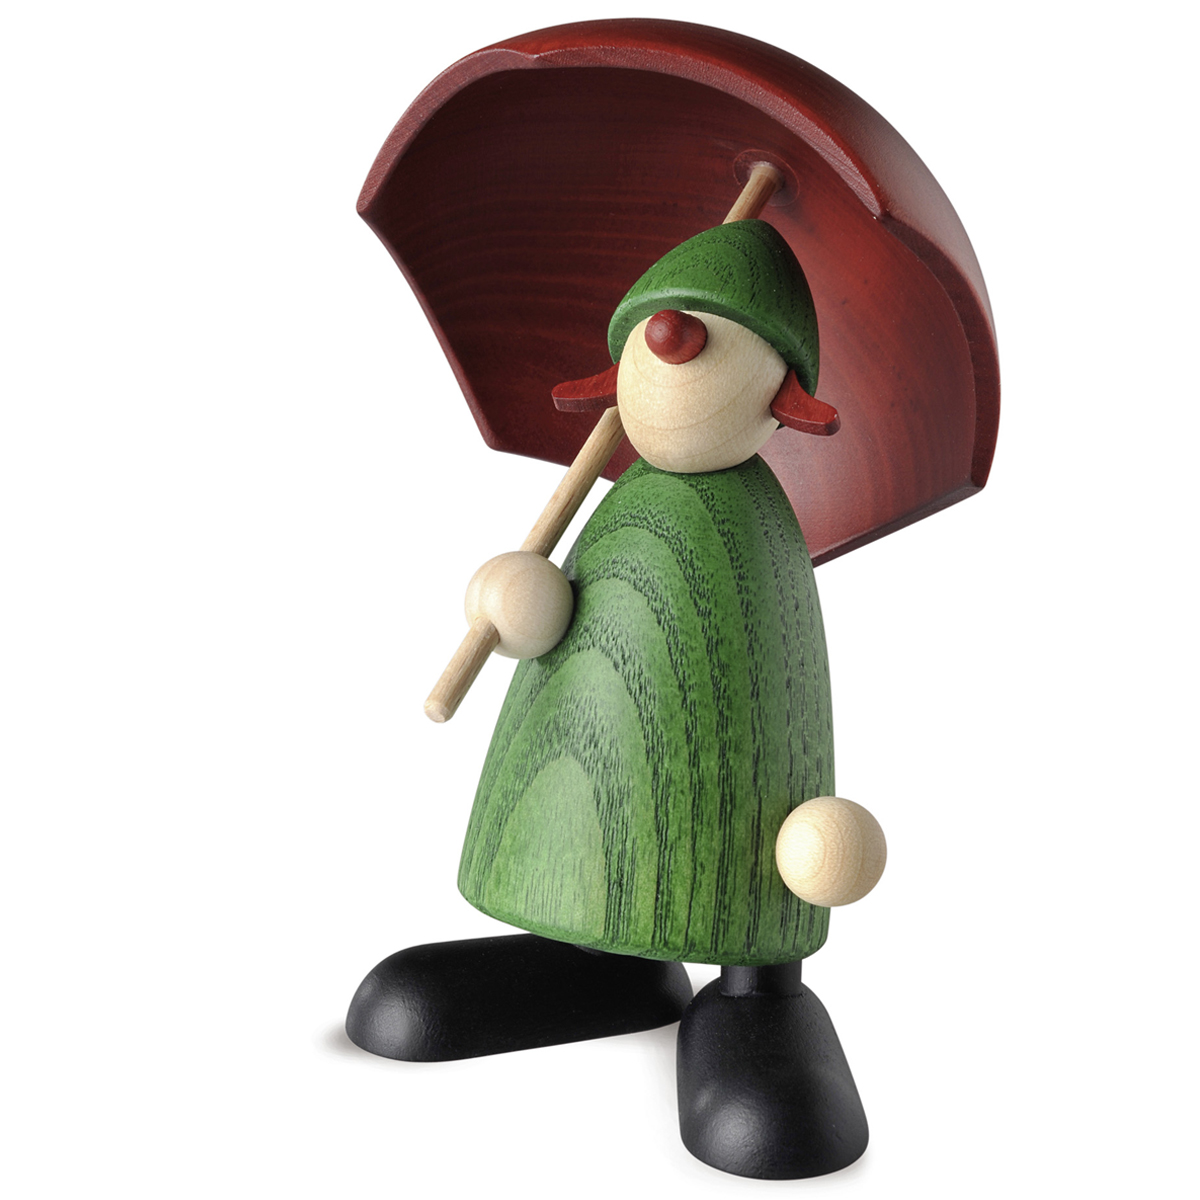 Gratulantin Louise mit Schirm, grün